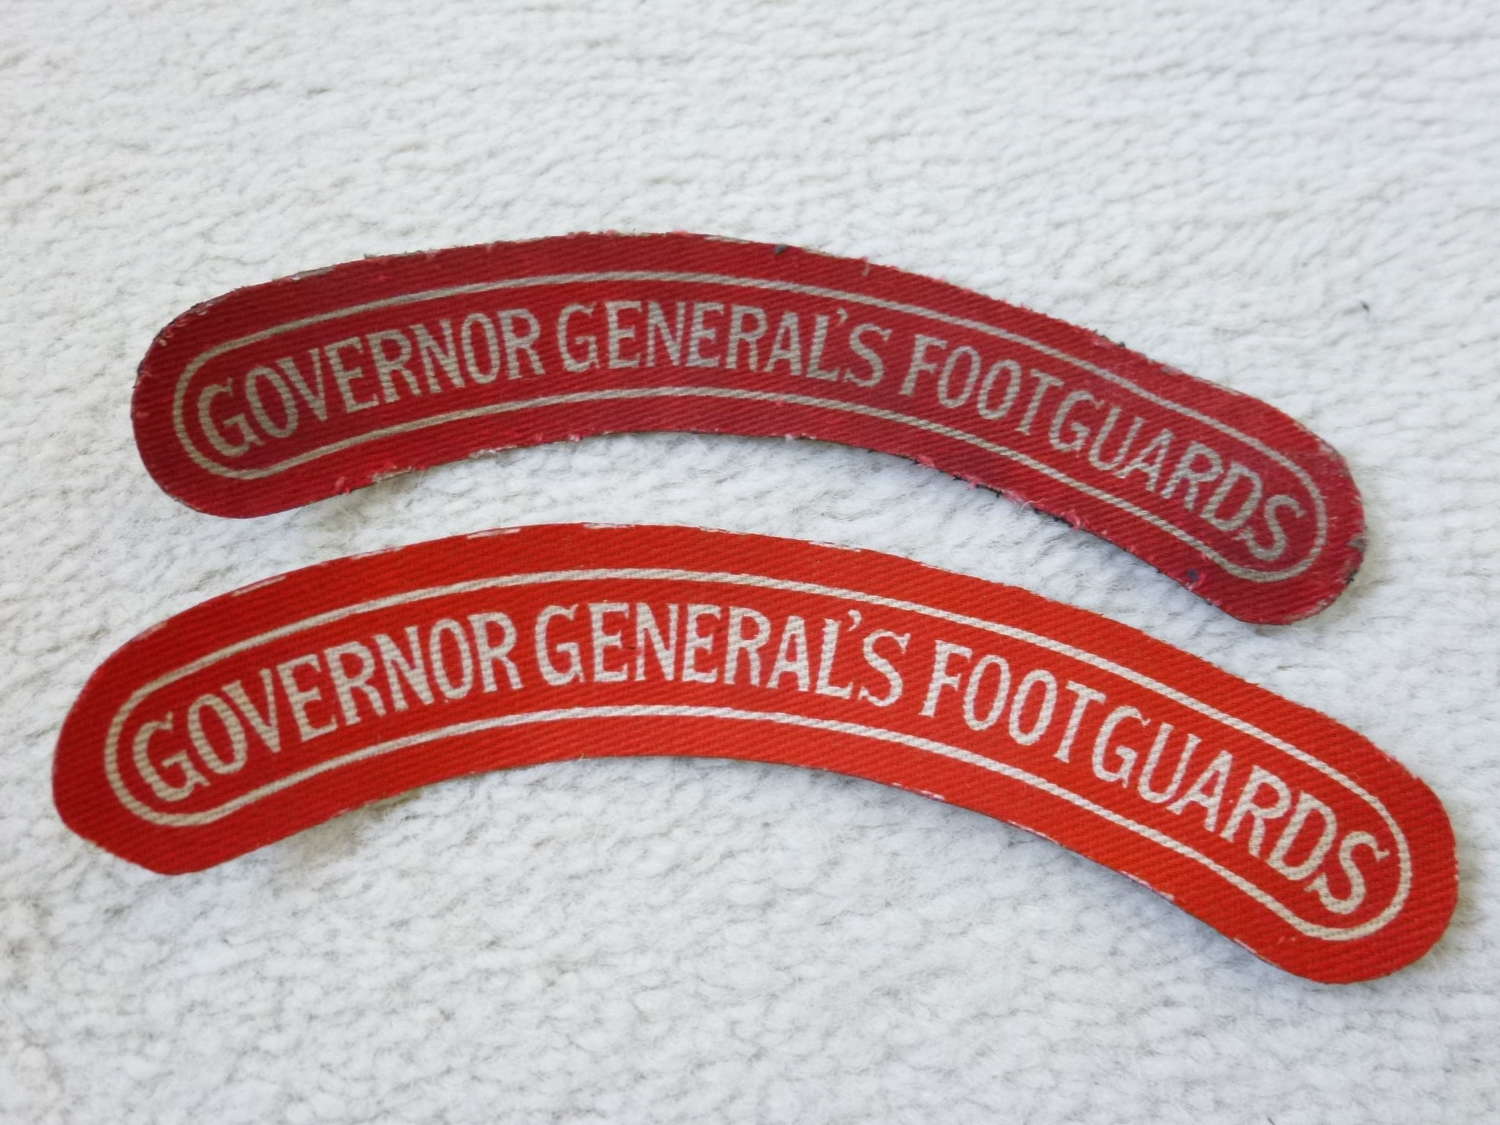 Canadian Governor Generals Footguards shoulder titles